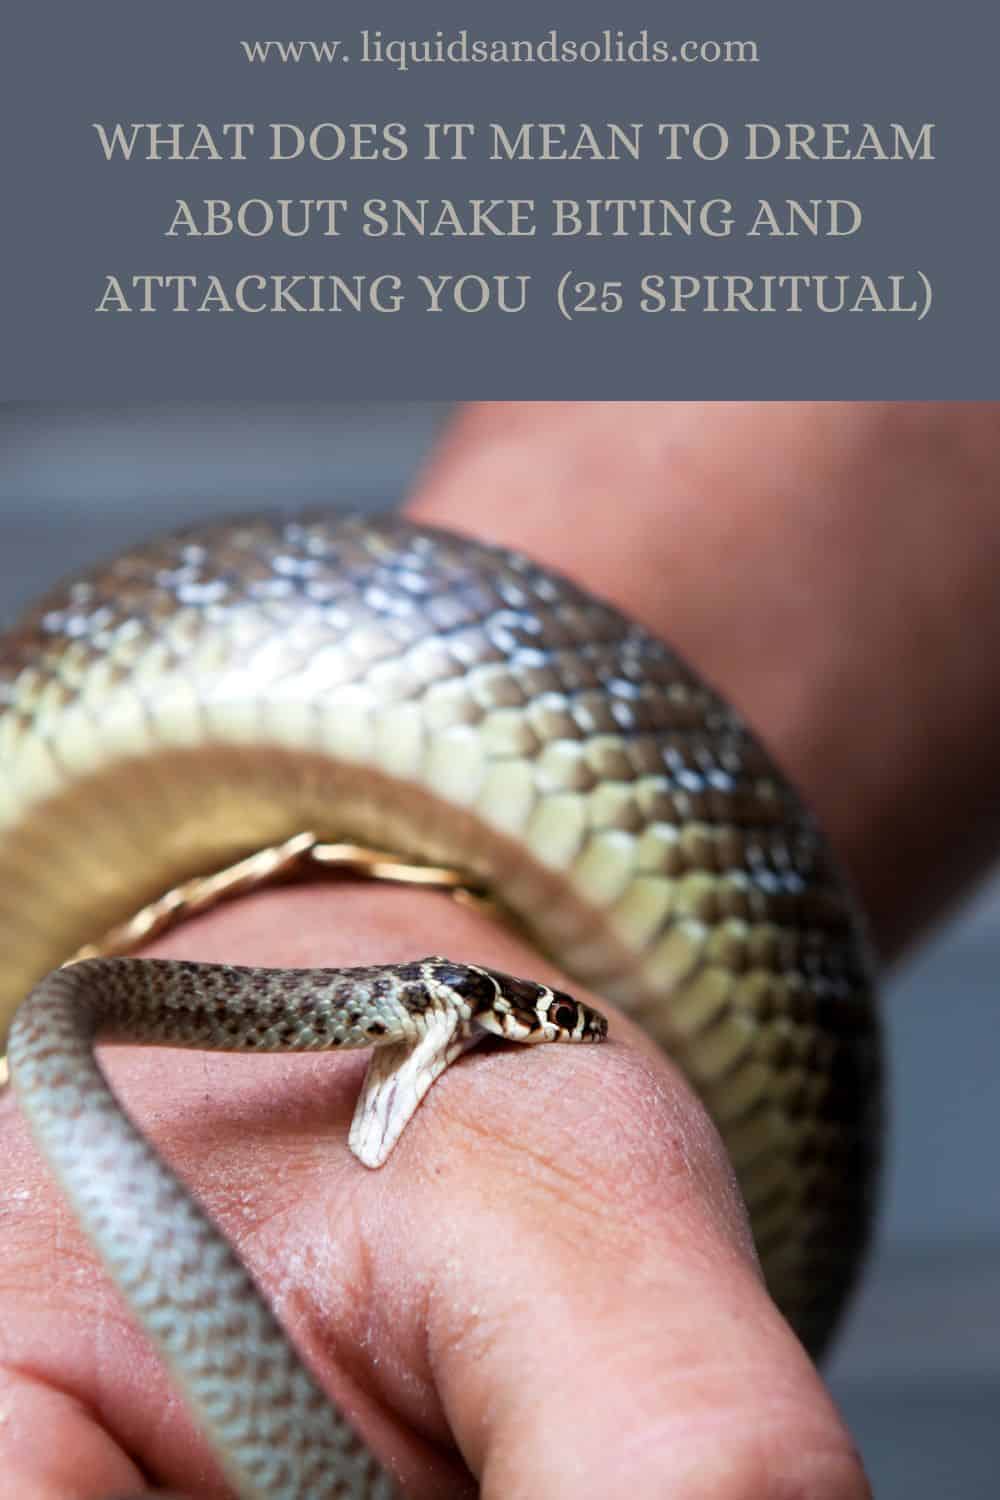  Rêve de serpent qui vous mord et vous attaque (25 significations spirituelles)